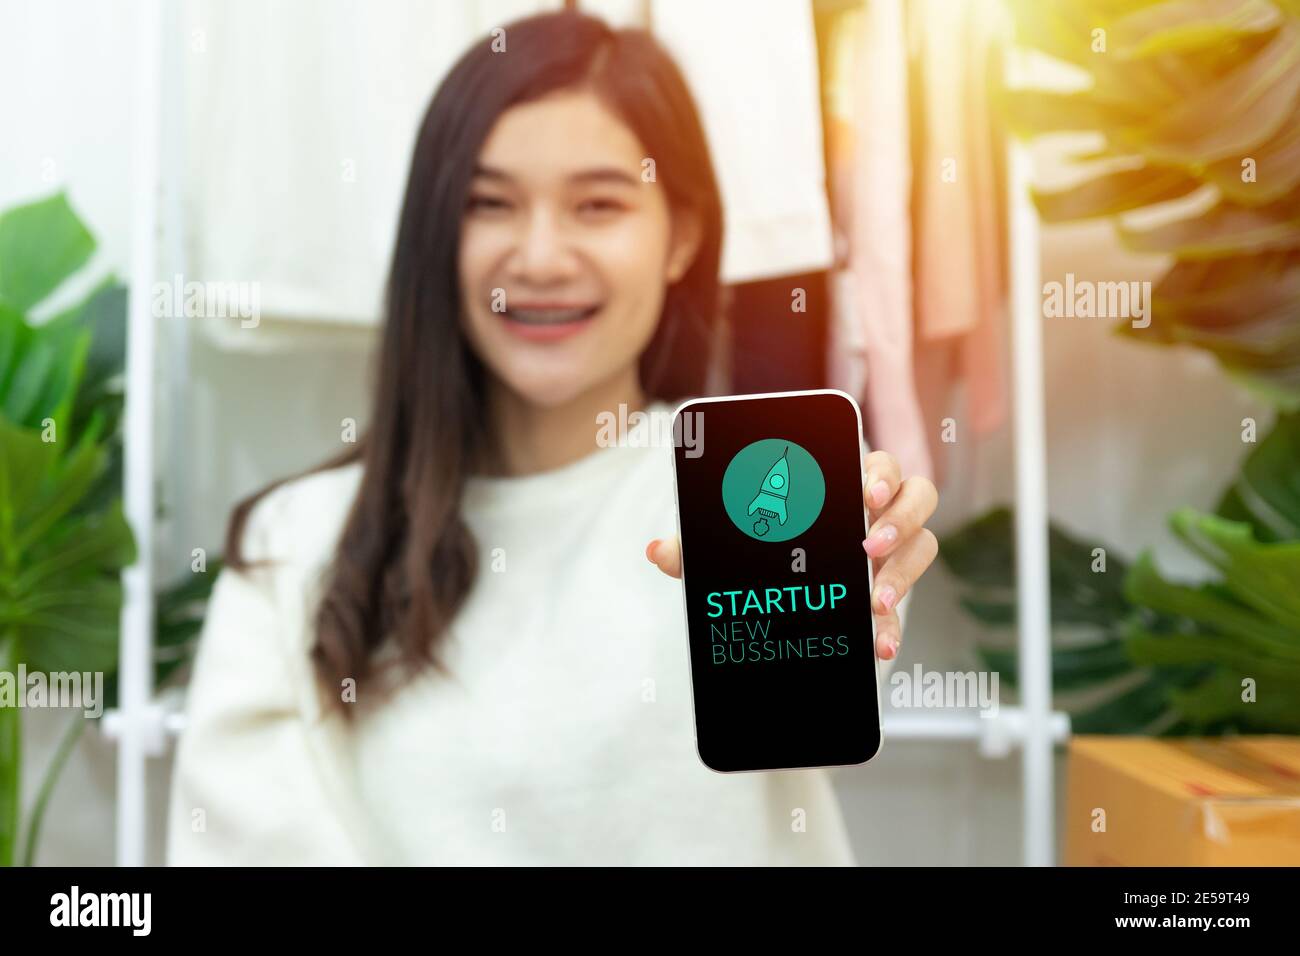 Junge glücklich zuversichtlich Kleinunternehmen Besitzer asiatische Frau zeigt Smartphone mit Bildschirm für die Inbetriebnahme neues Geschäft mit Raketenstart-Symbol. Stockfoto